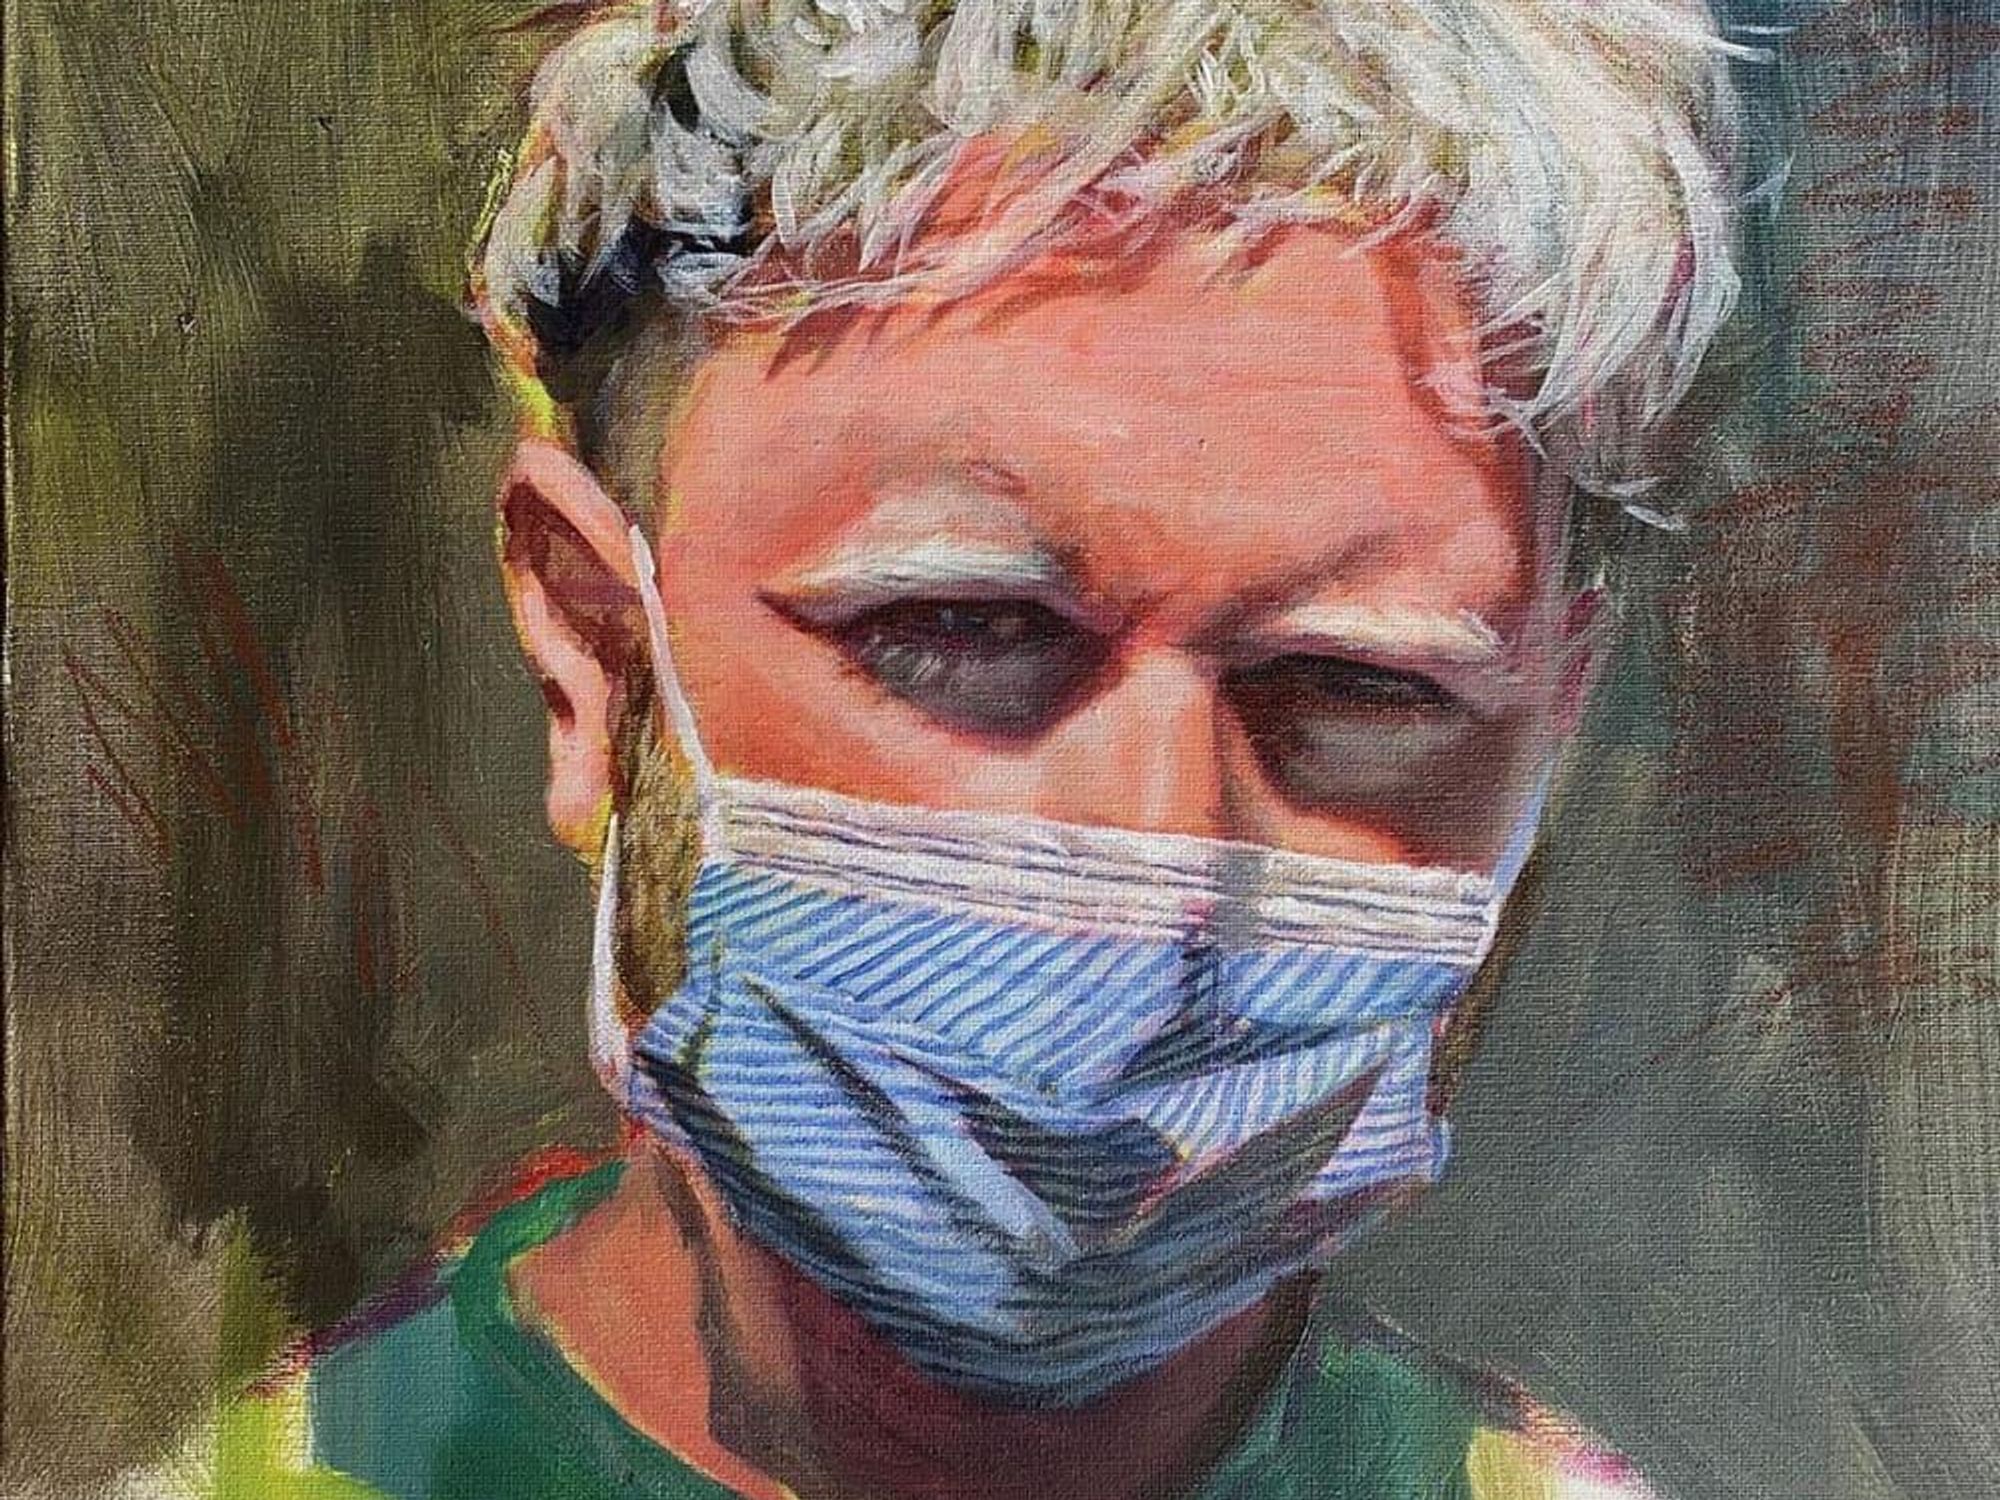 Jay Wilkinson, “PPE,” 2020, acrylic on canvas